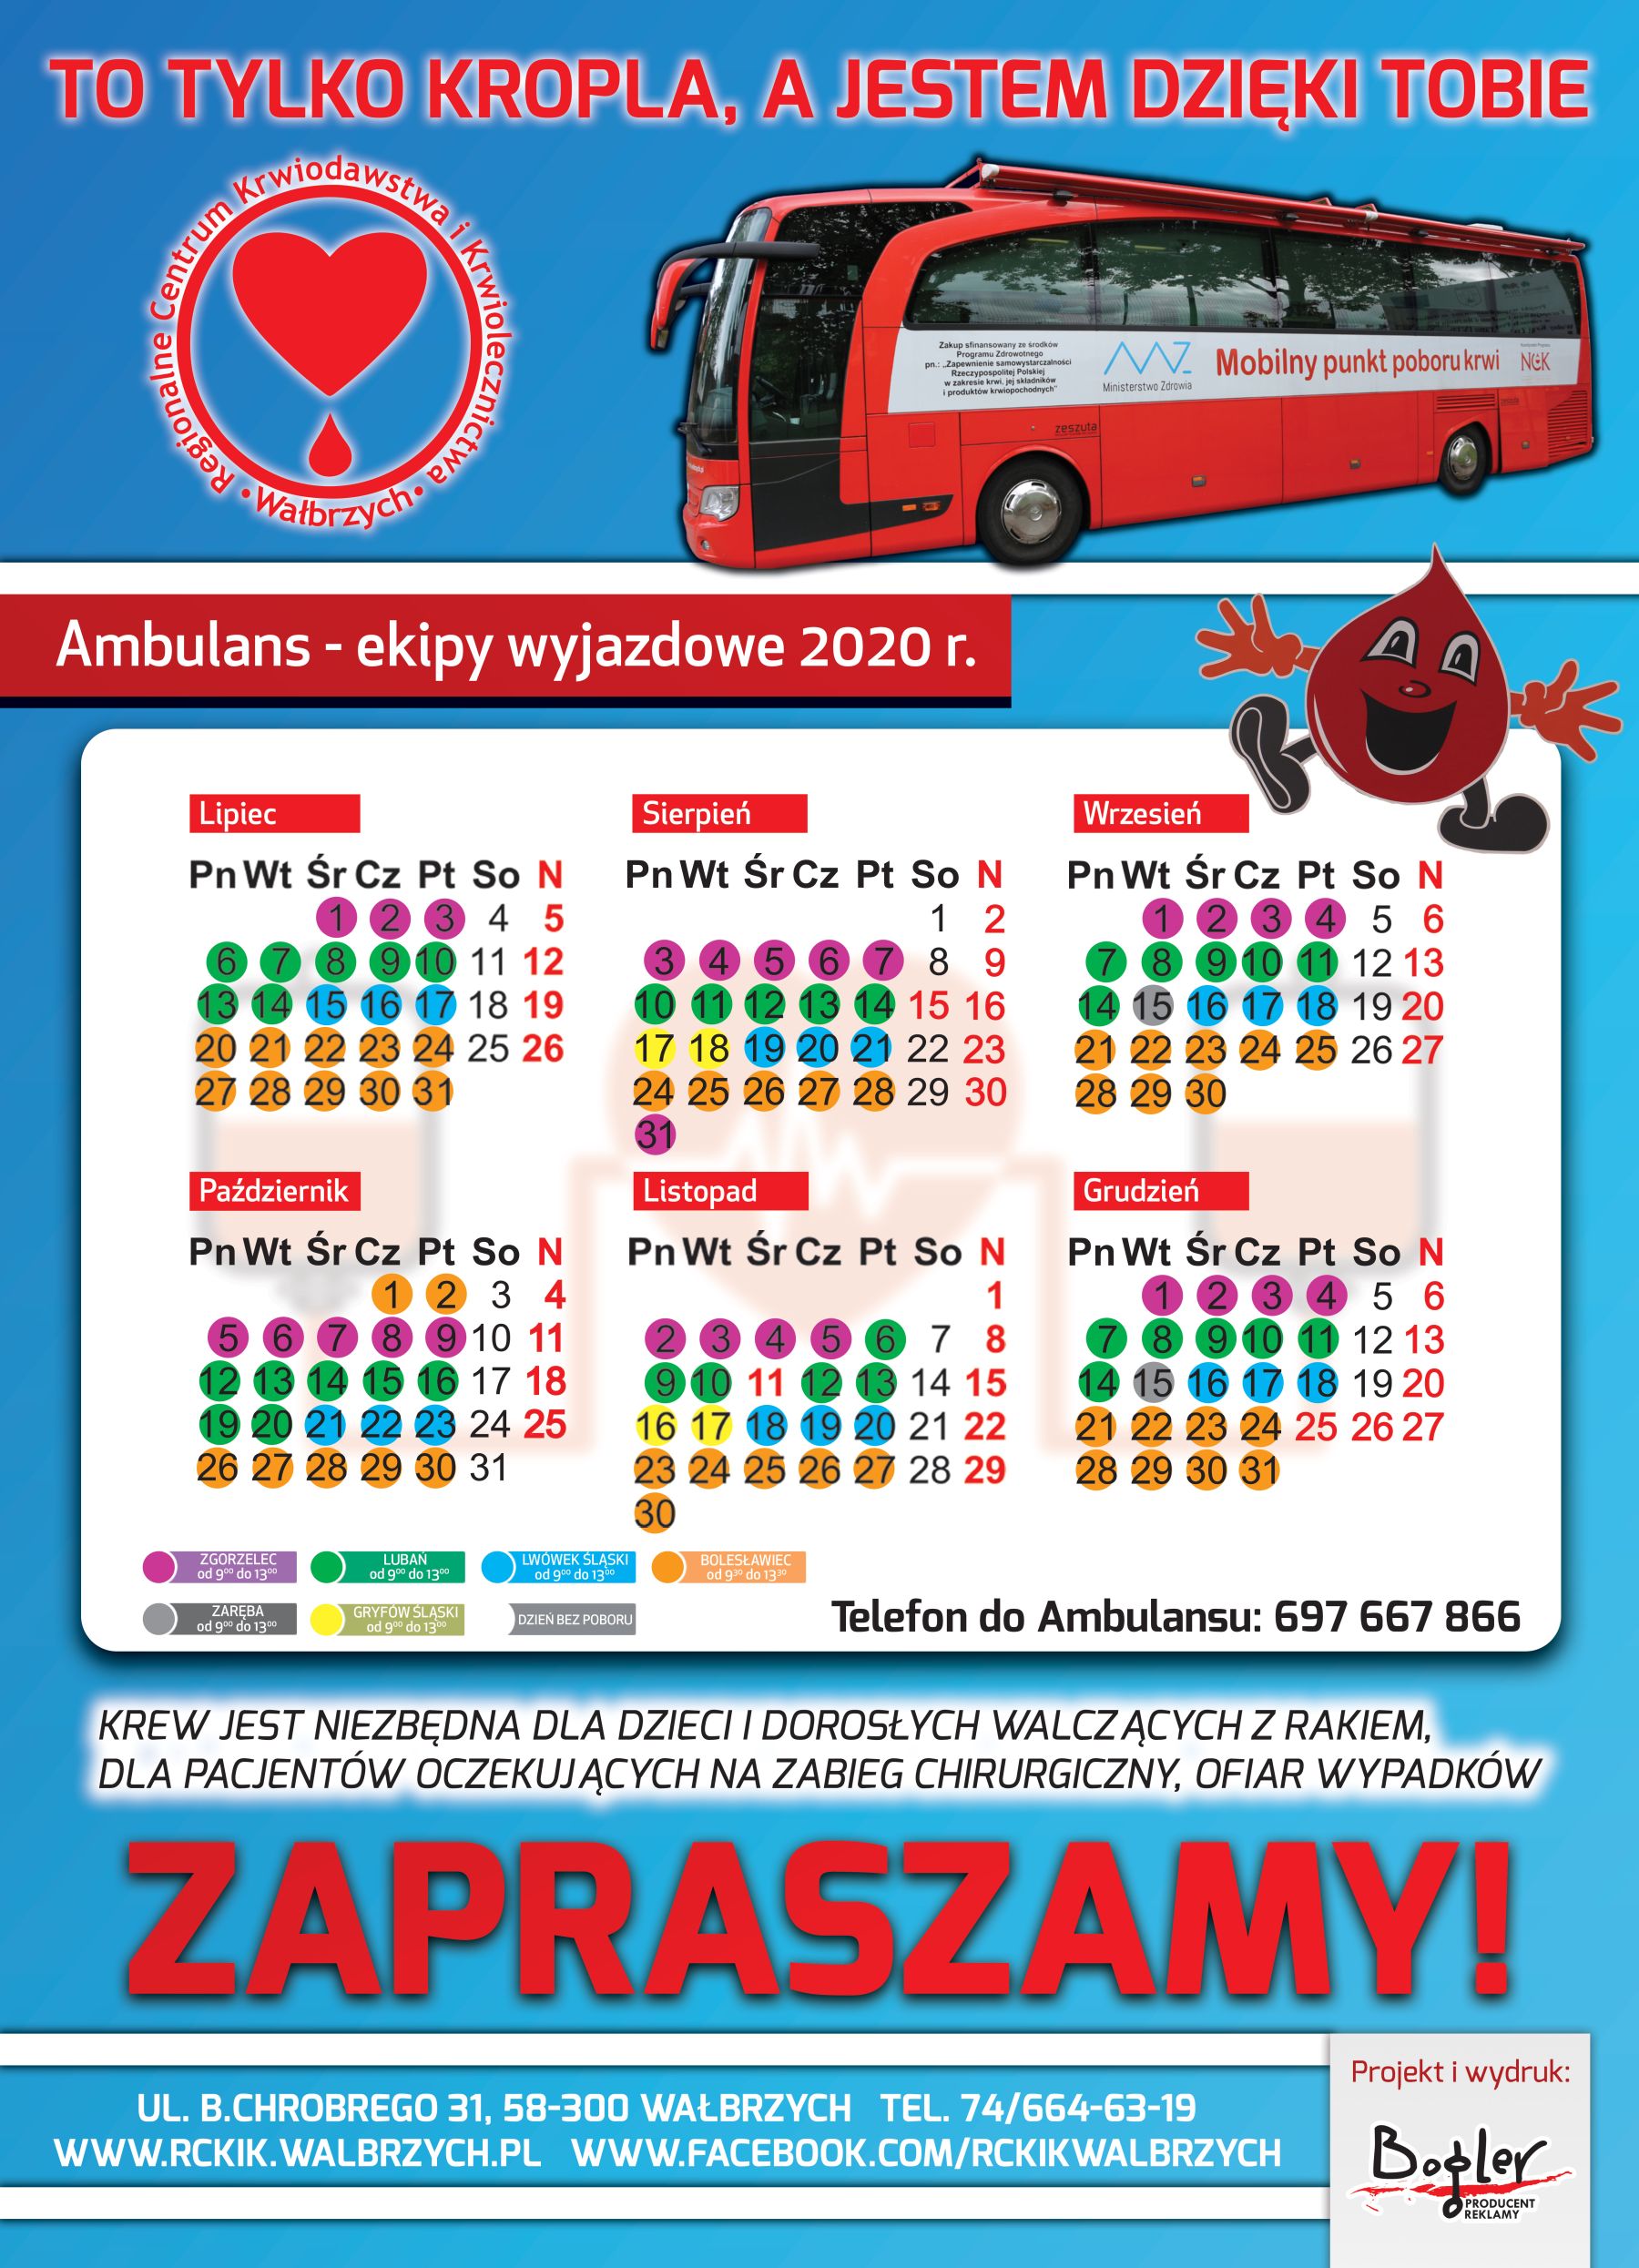 Kalendarz mobilnego poboru krwi w Zgorzelcu, Bolesławcu, Lubaniu, Zarebie, Gryfowie Śląskim i Lwówku Śląskim